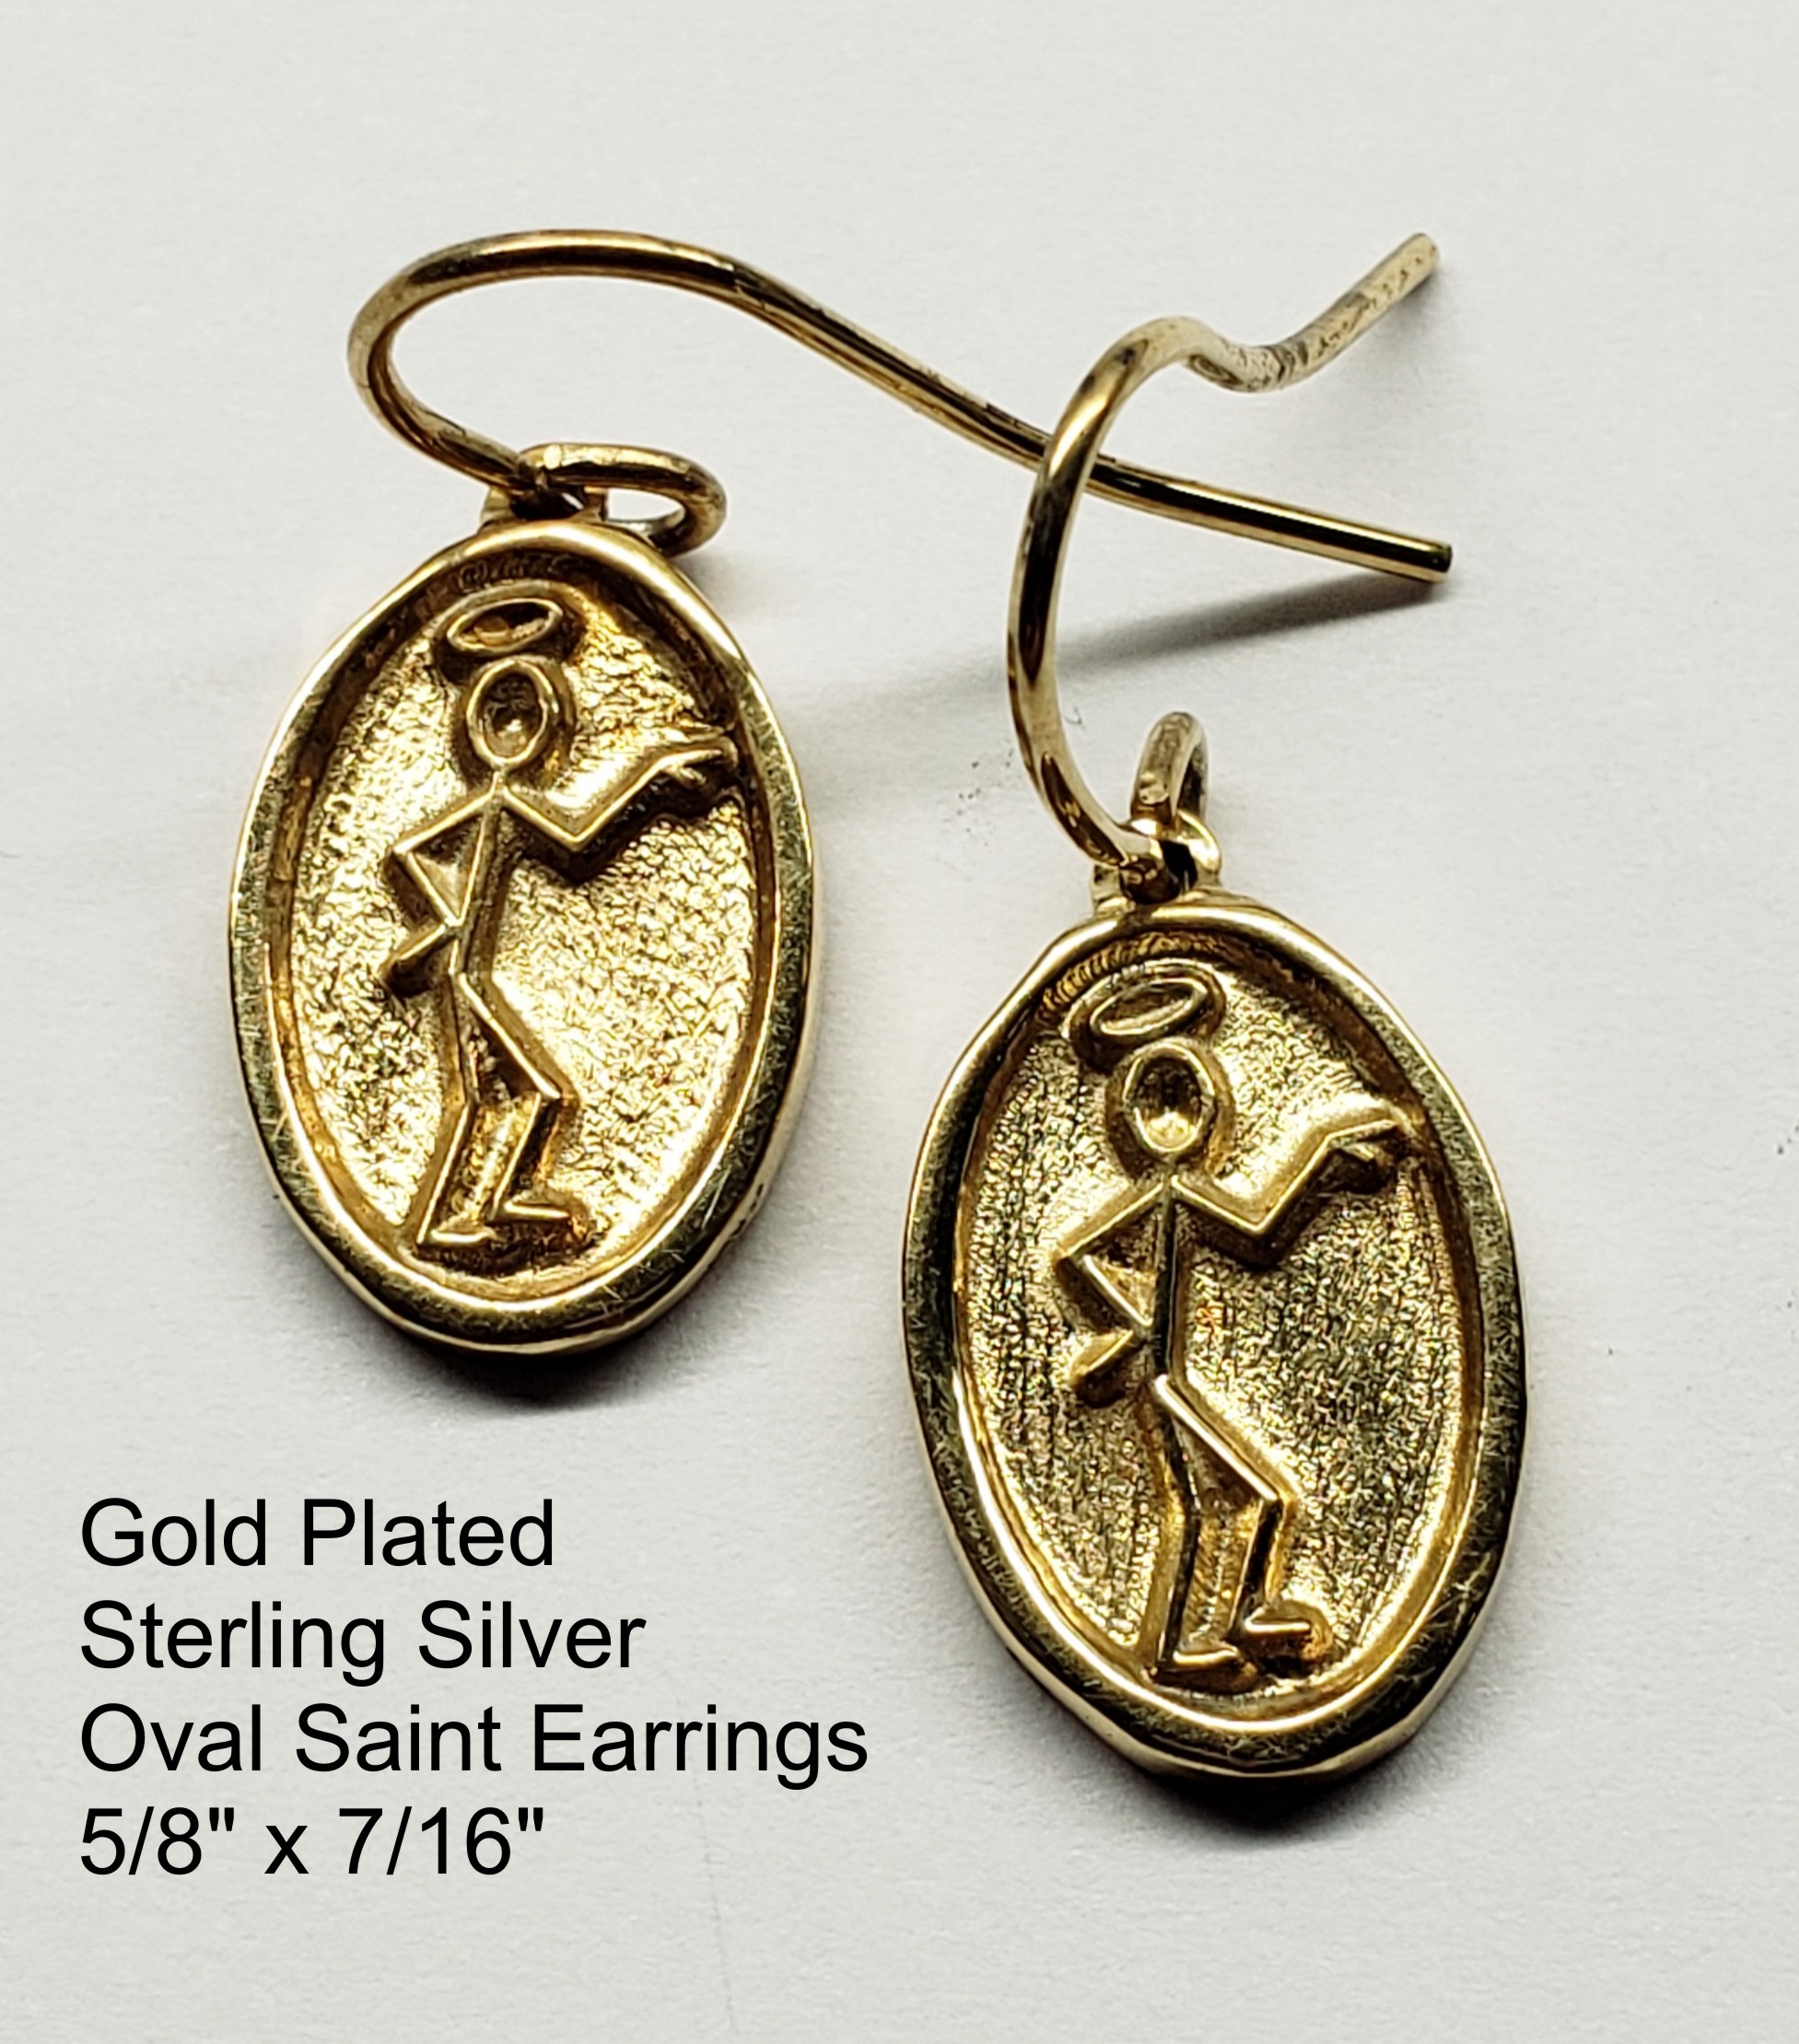 Oval Saint Earrings